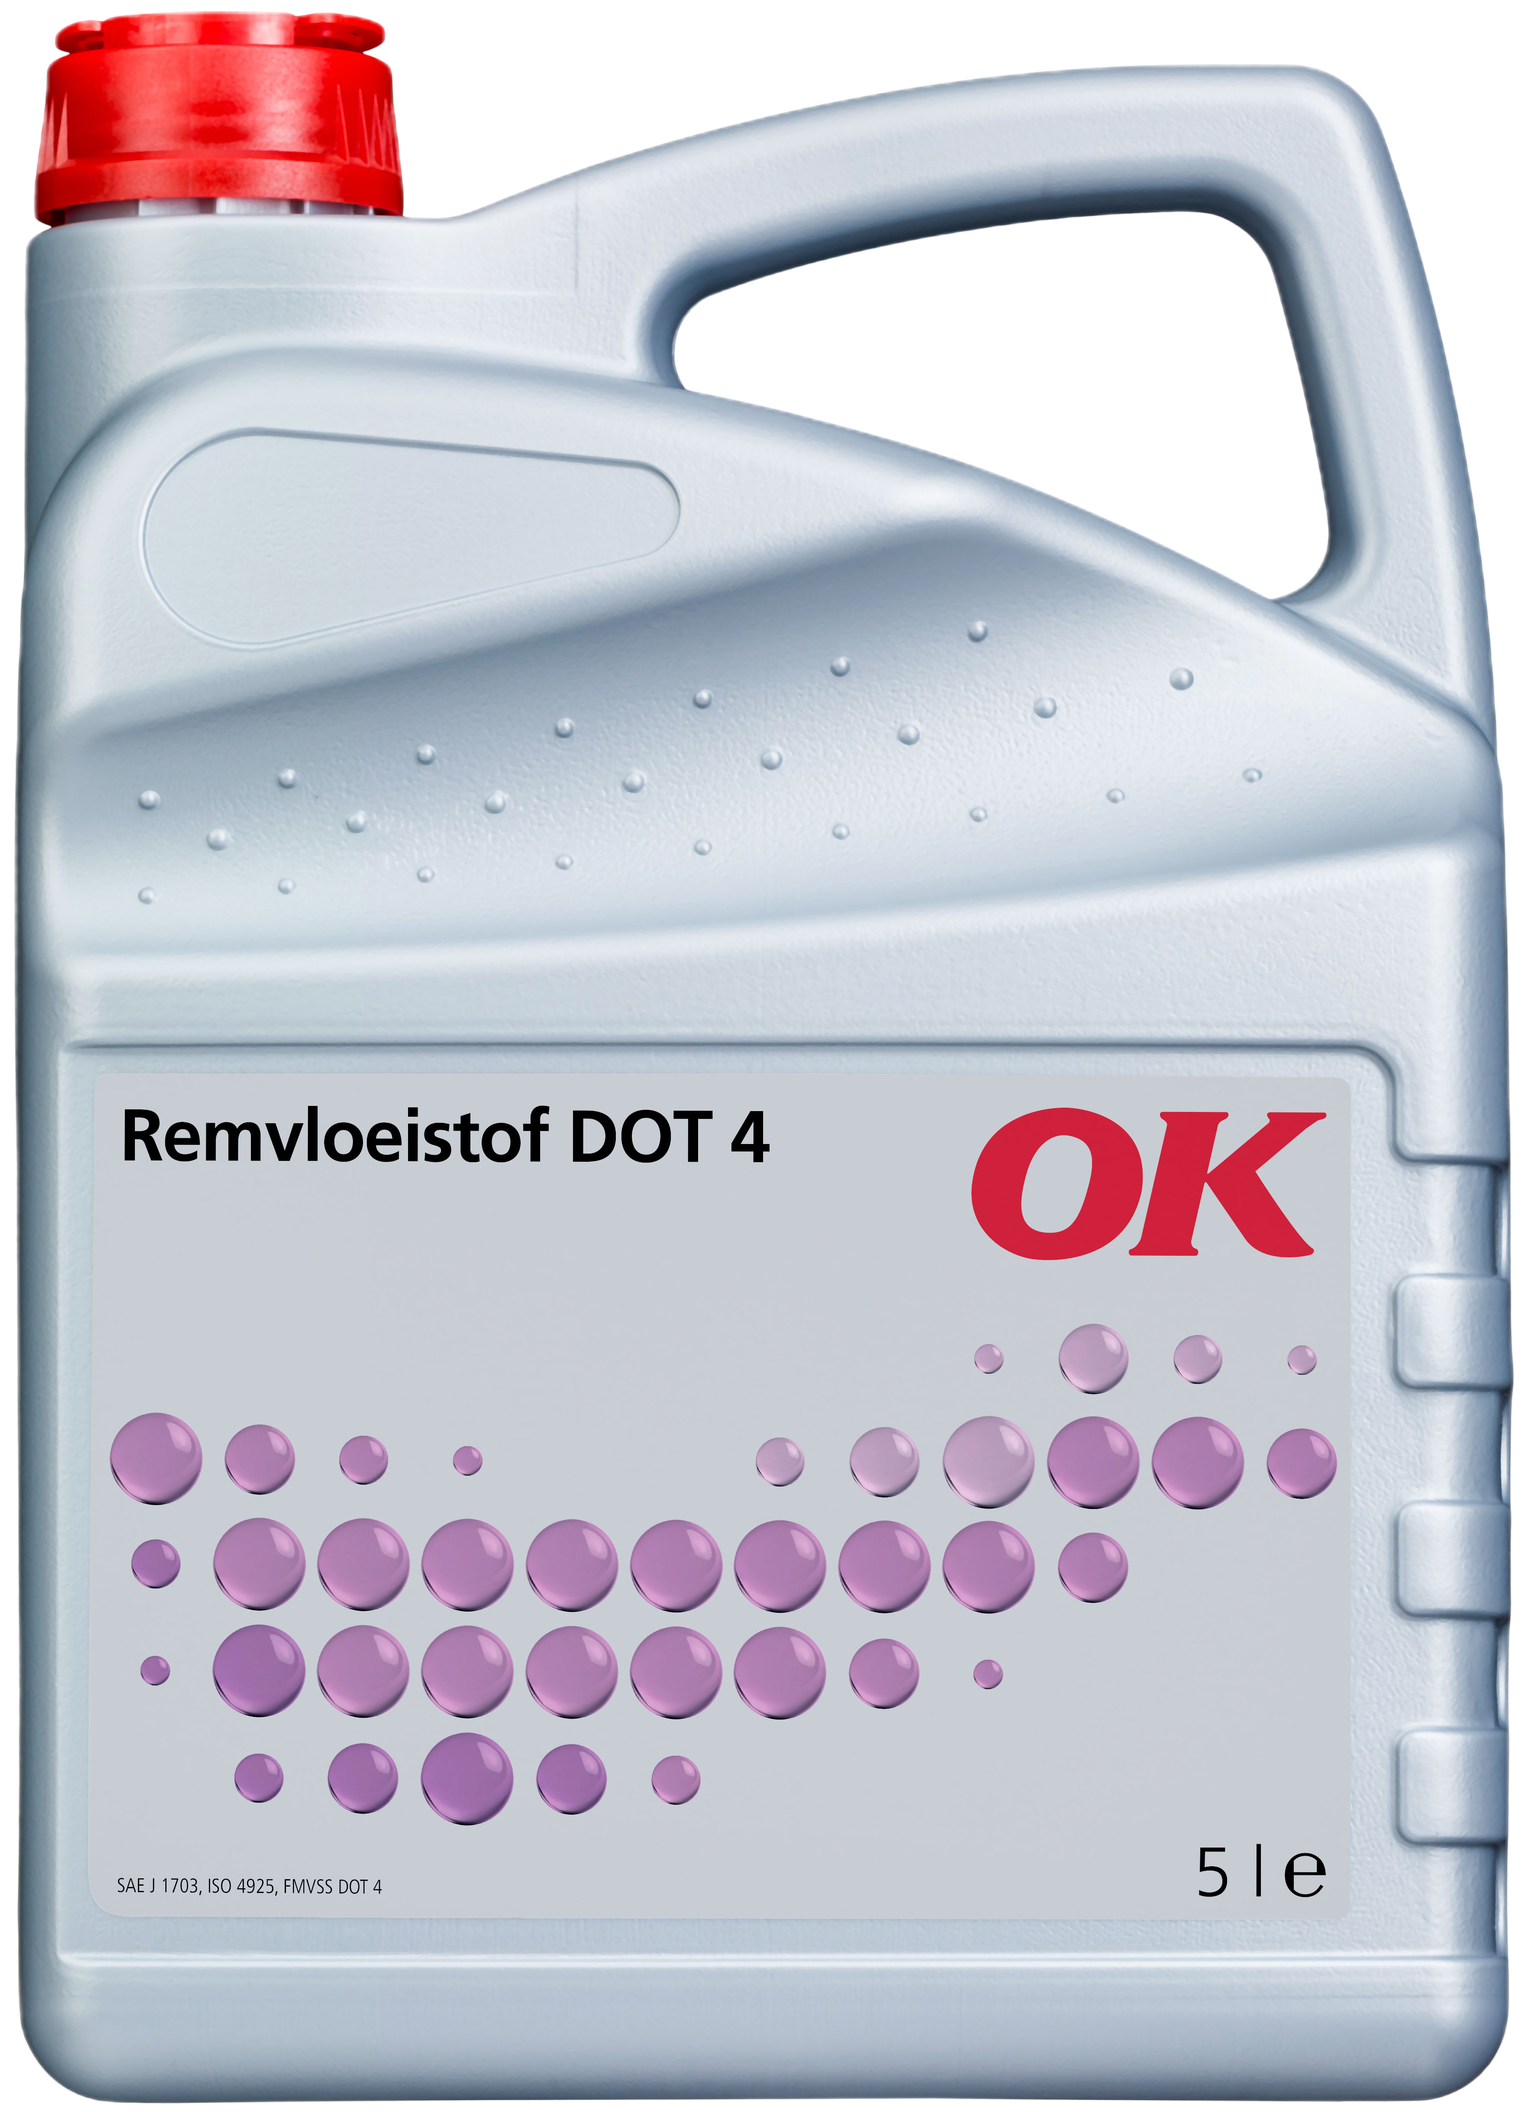 O3701-5 OK Remvloeistof DOT 4 is een hoogwaardig synthetisch product met zeer bijzondere eigenschappen.